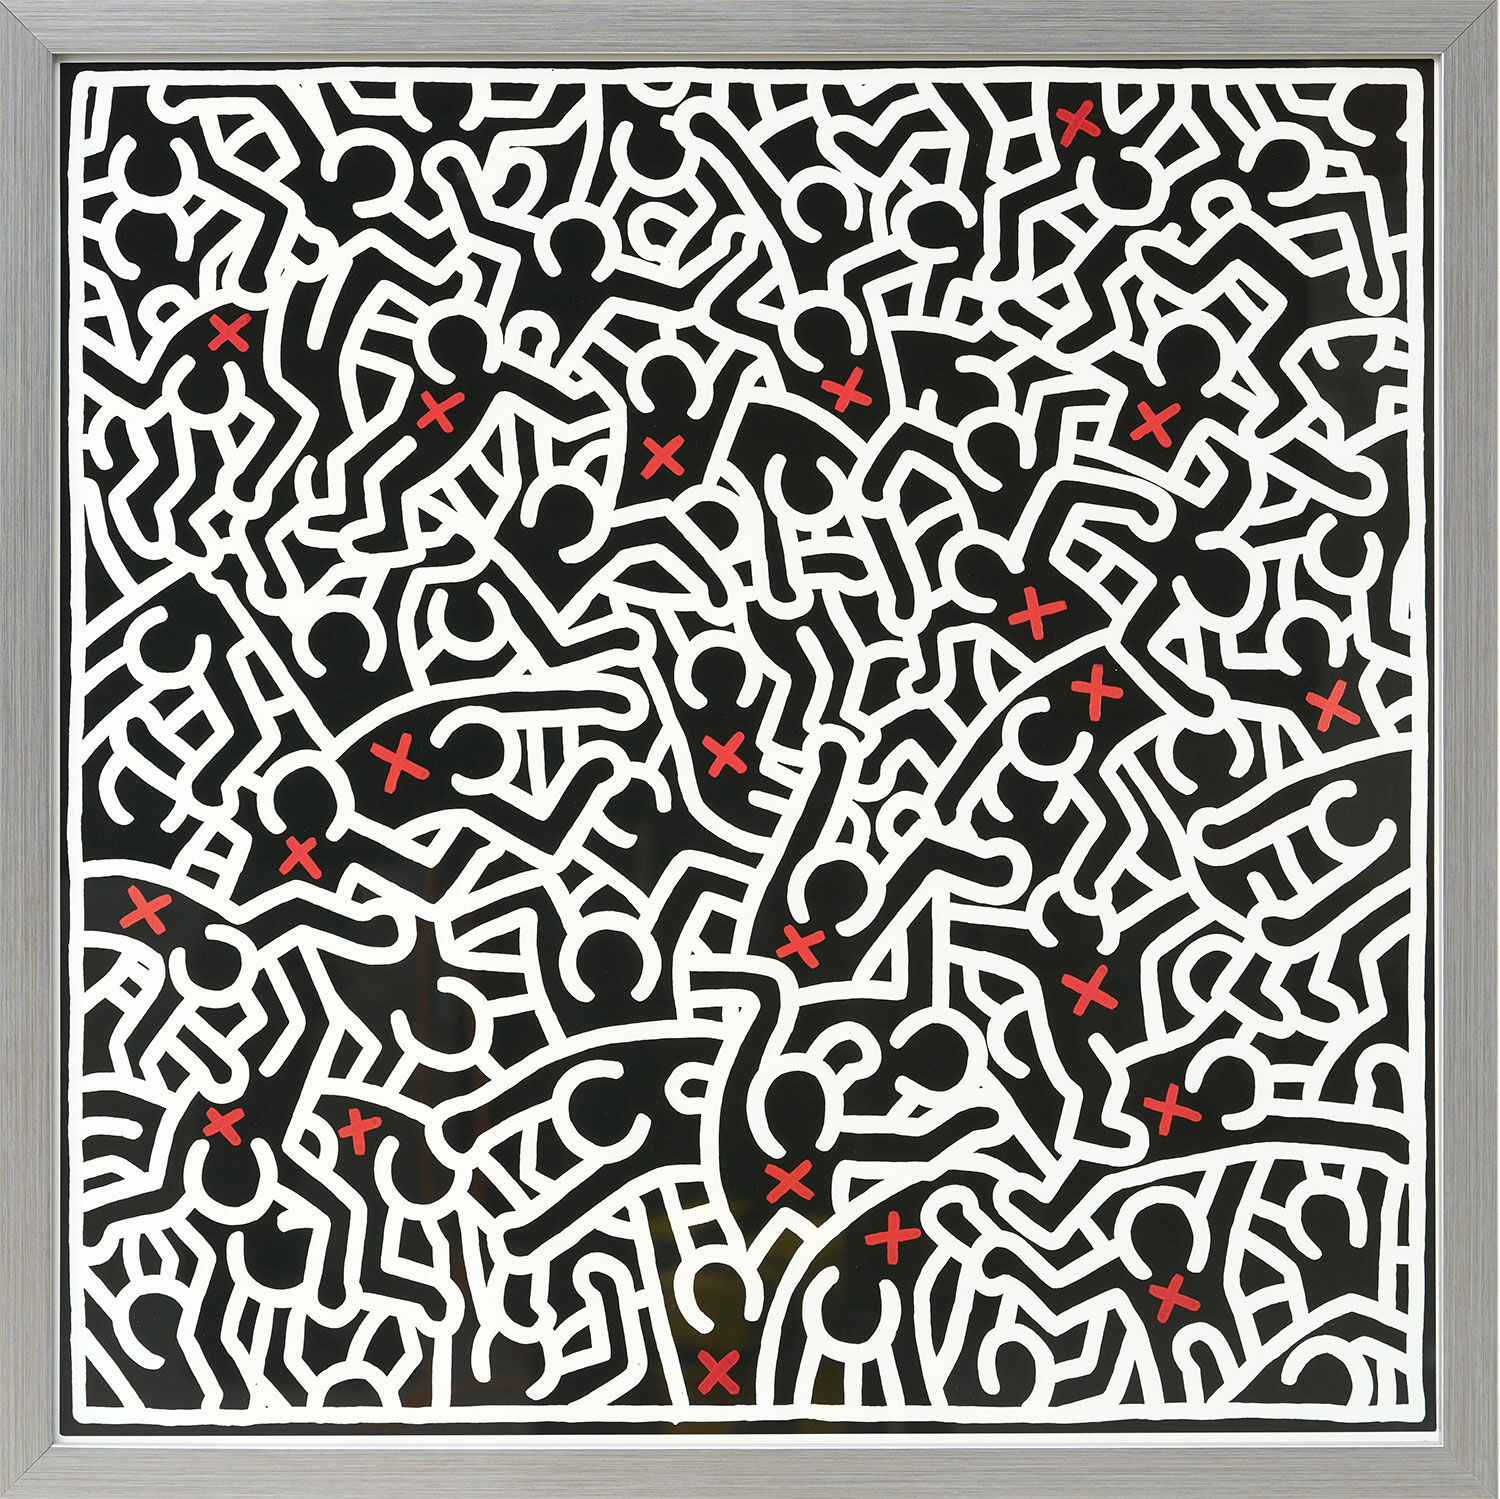 Billede "Uden titel, april" (1985), indrammet von Keith Haring